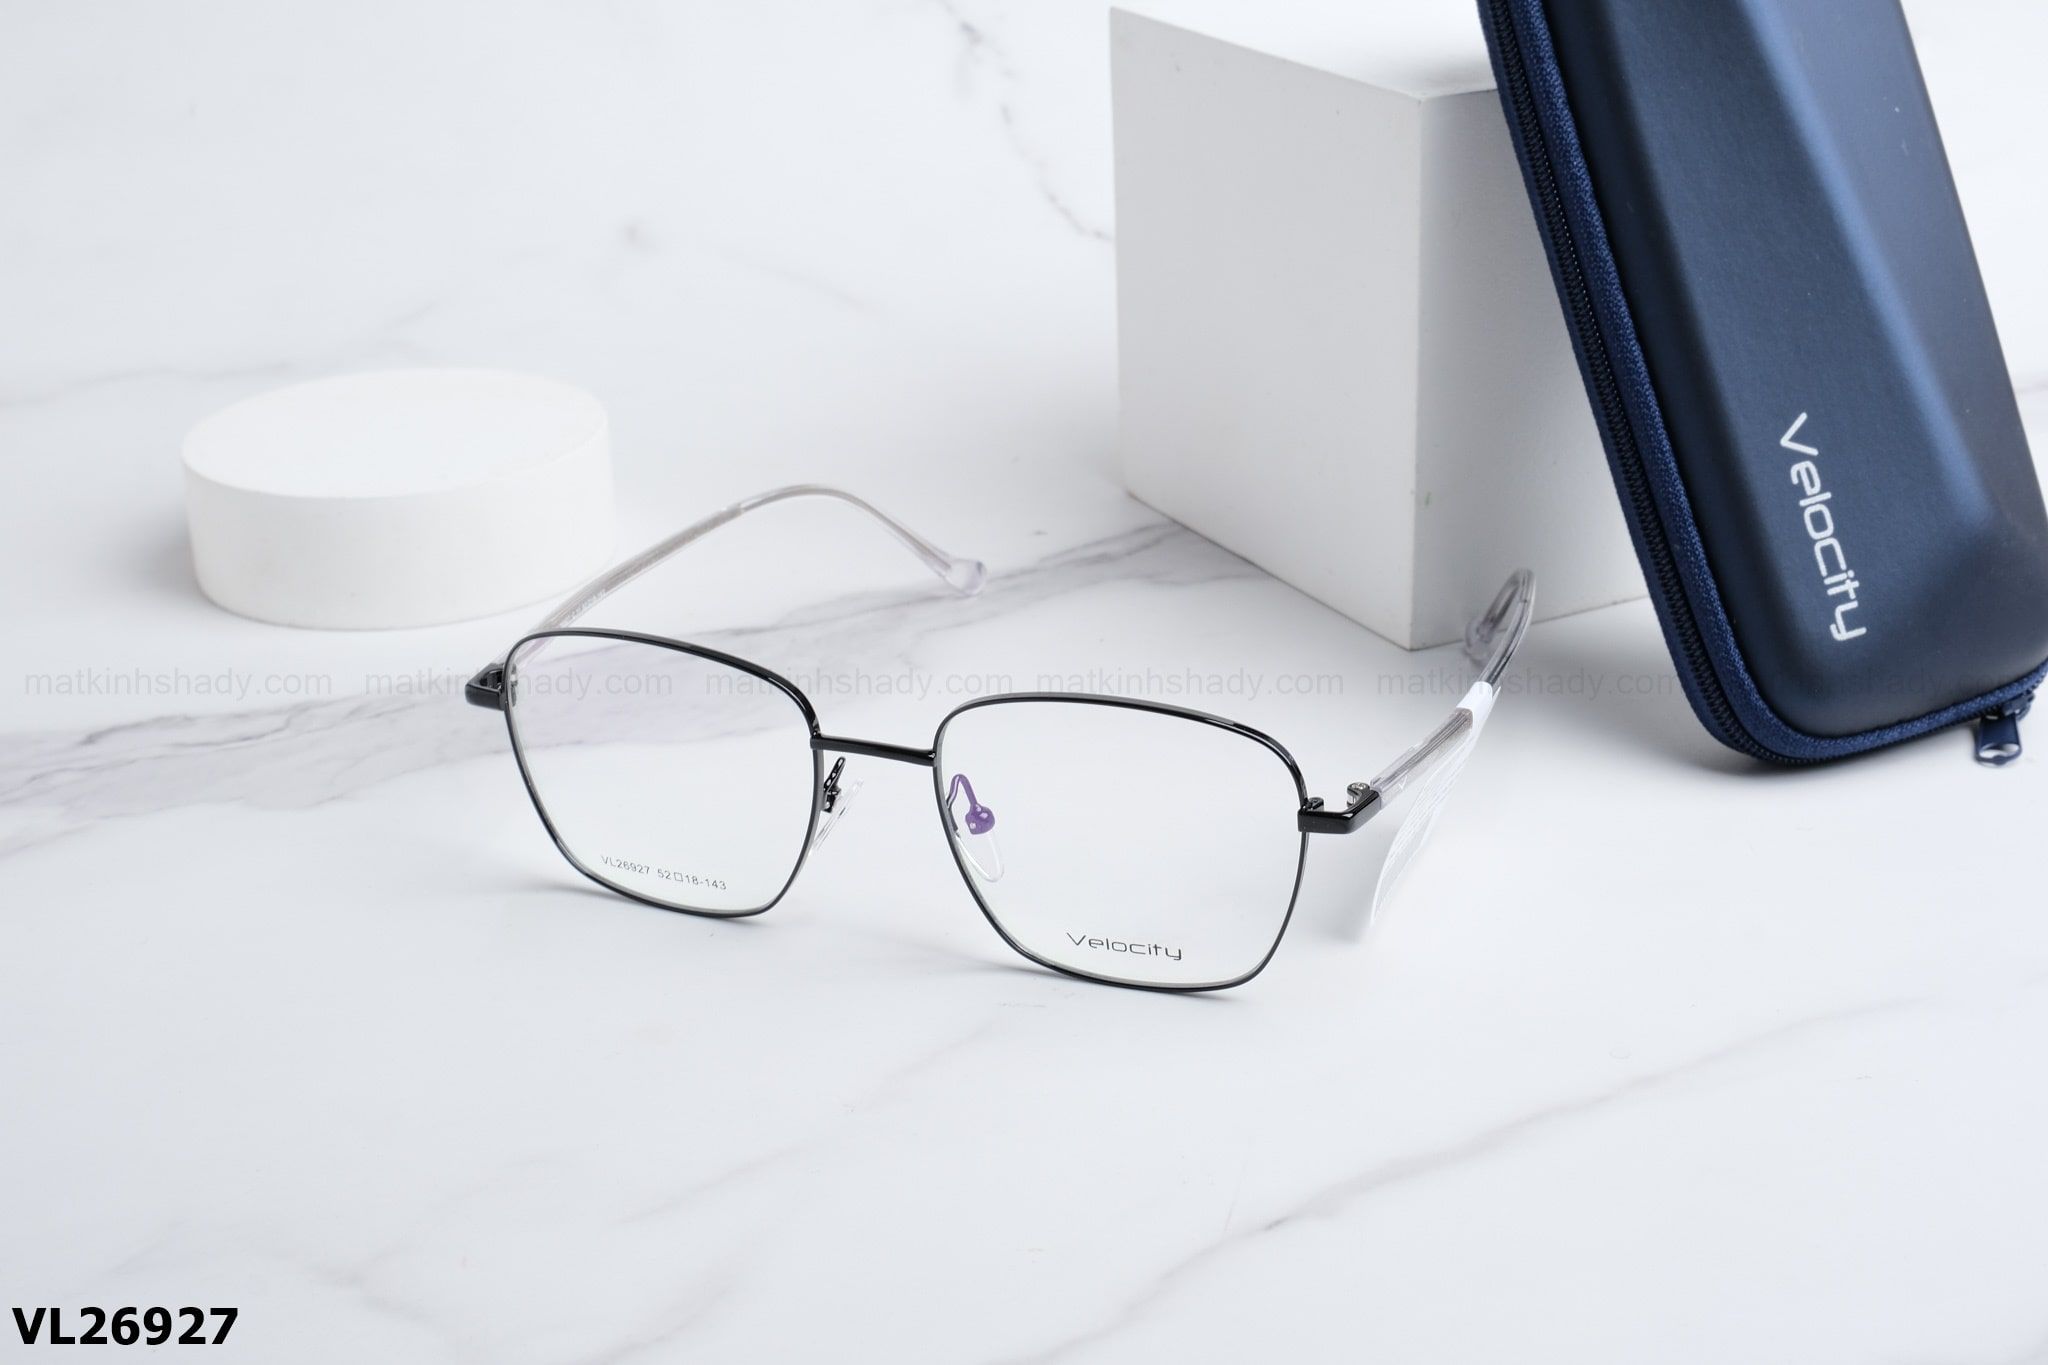  Velocity Eyewear - Glasses - VL26927 